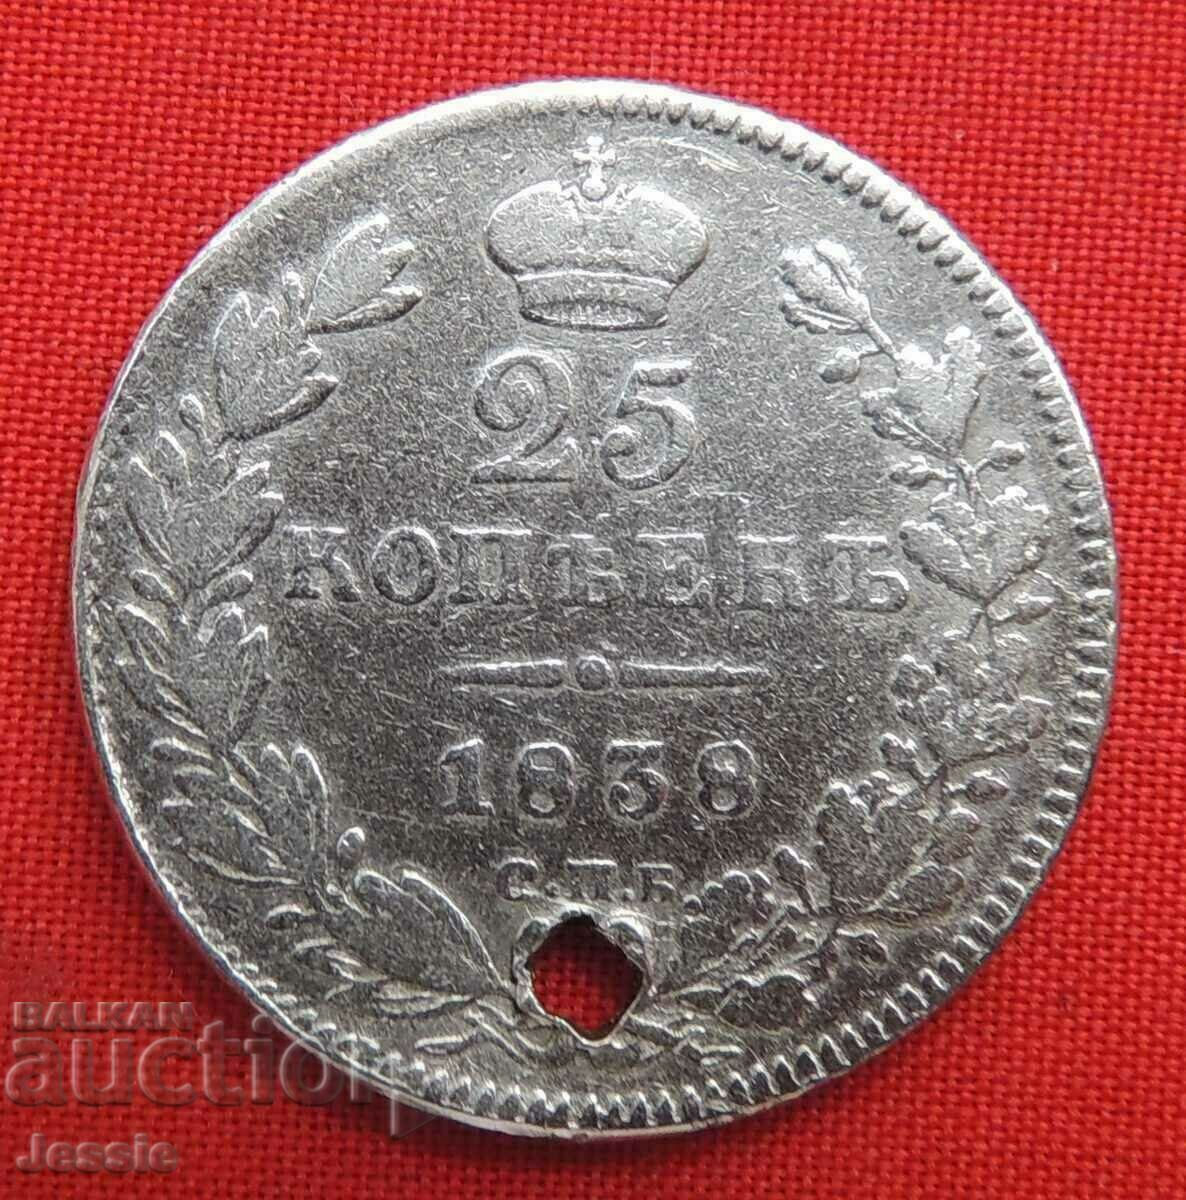 25 kopecks 1838 SPB/NG silver